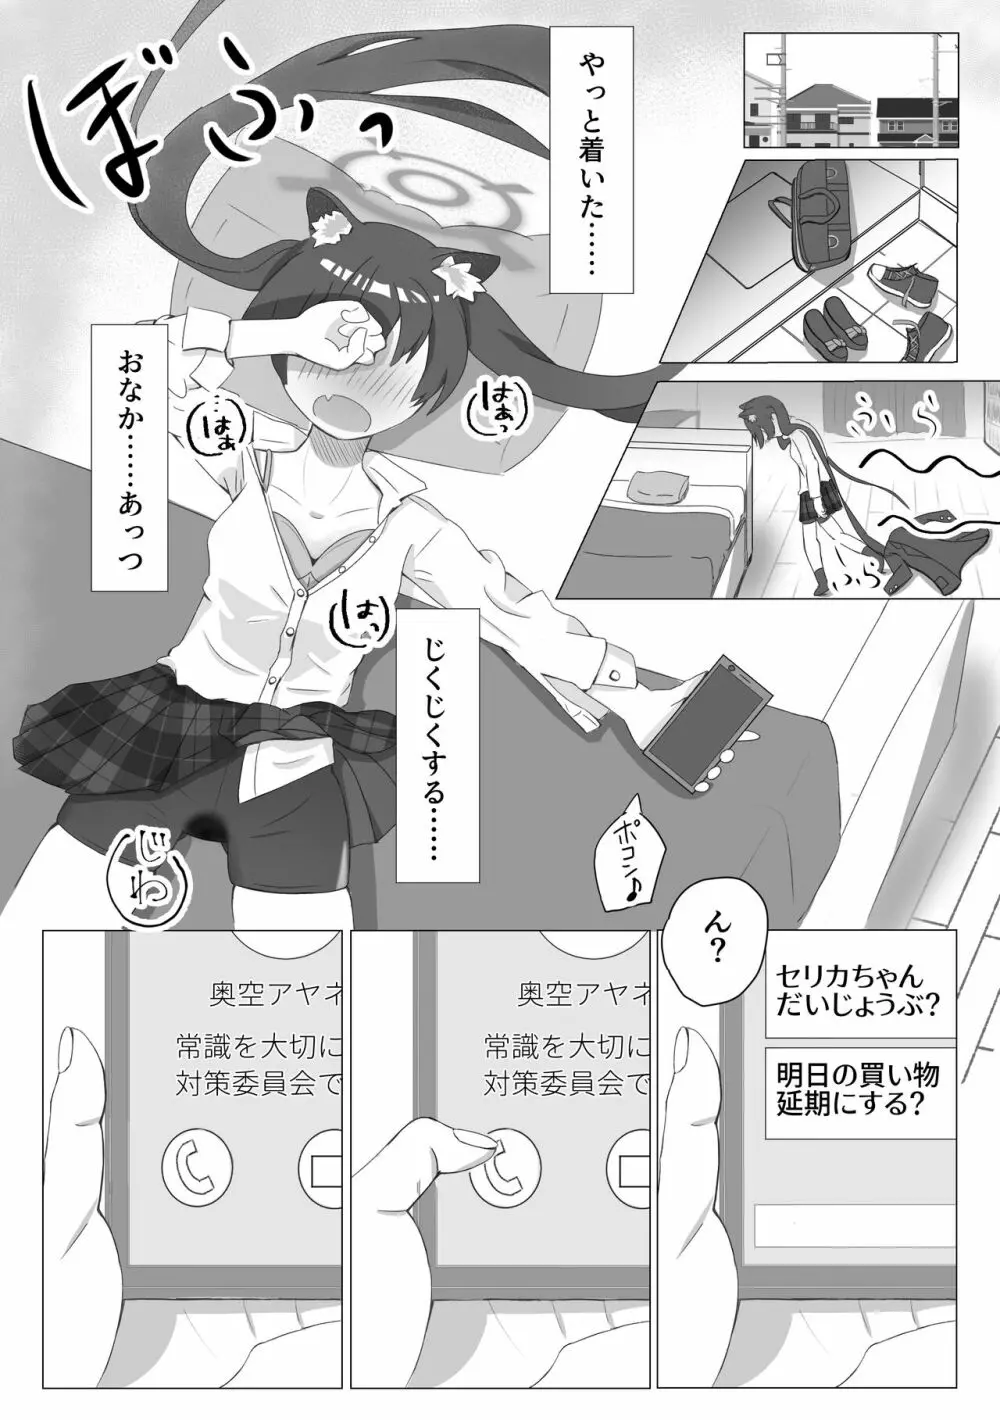 シロセリ発情期性処理関係概念えち漫画 - page4